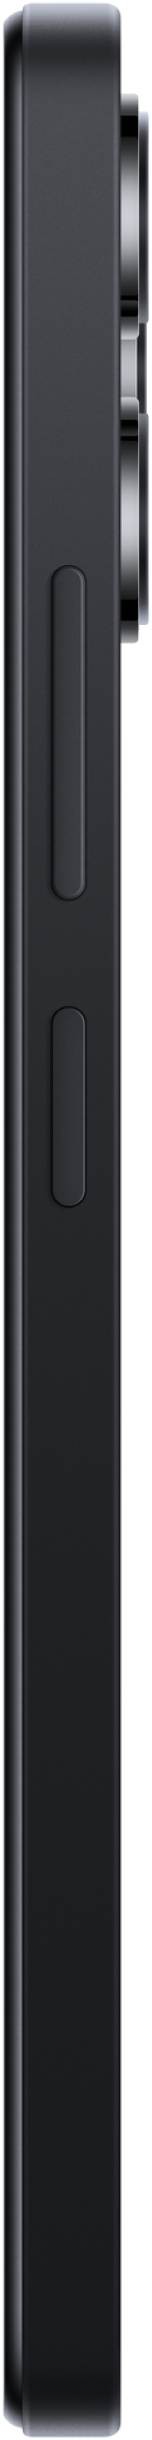 XIAOMI Smartphone Redmi 12 4G 128Go Noir - REDMI12-4-128NOIR